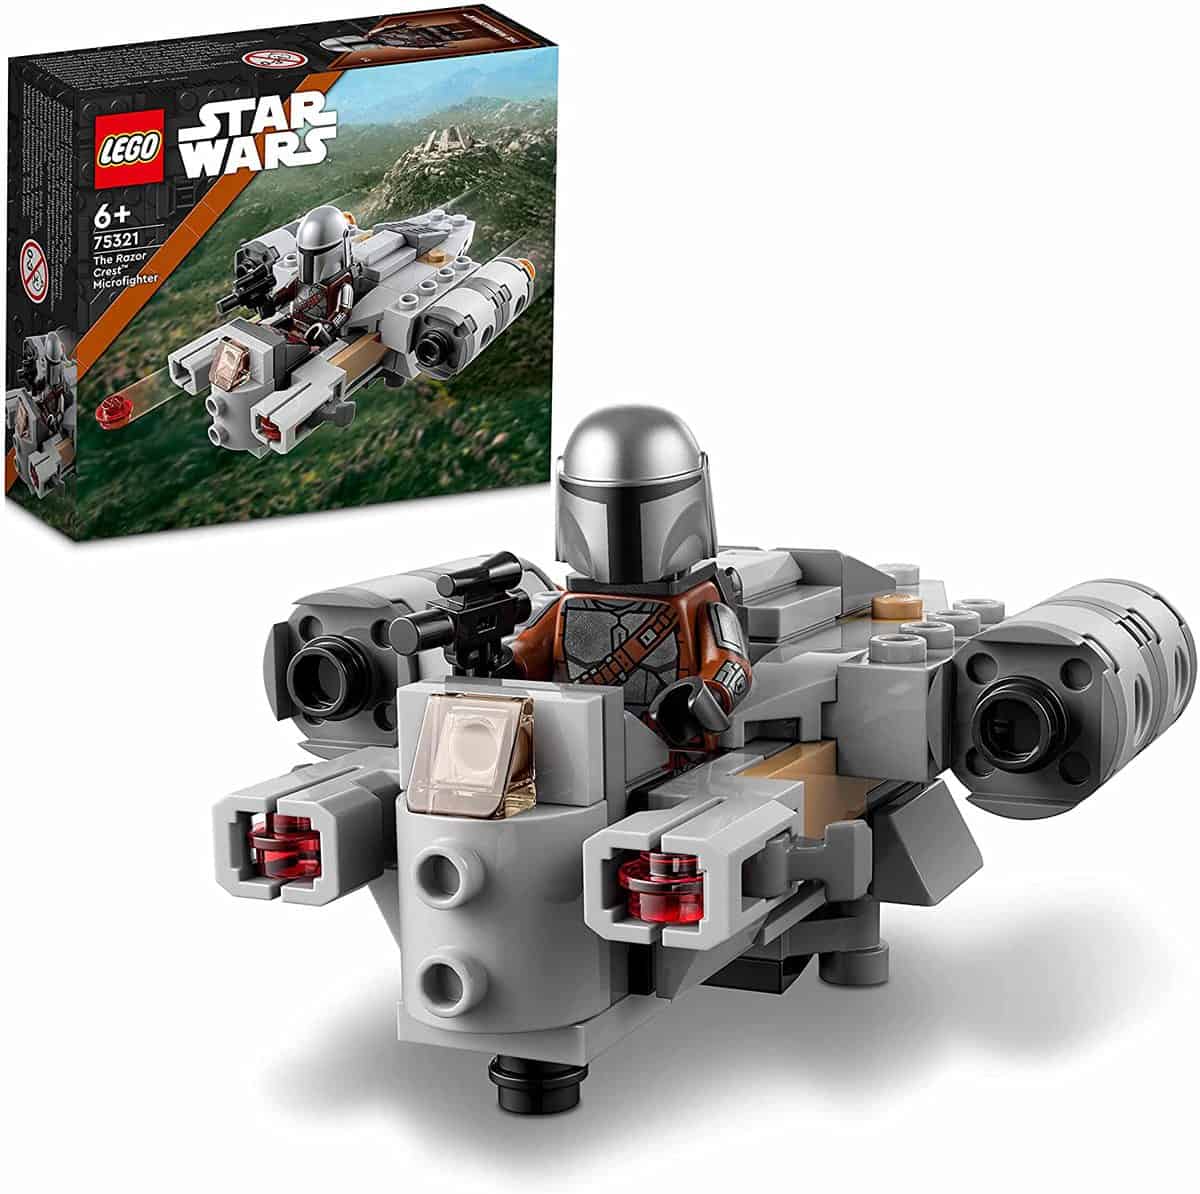 LEGO (75321) Star Wars Razor Crest Microfighter mit Mandalorianischem Kanonenboot & Mandalorianer-Figur - für 6,63 € [Prime] statt 10,44 €